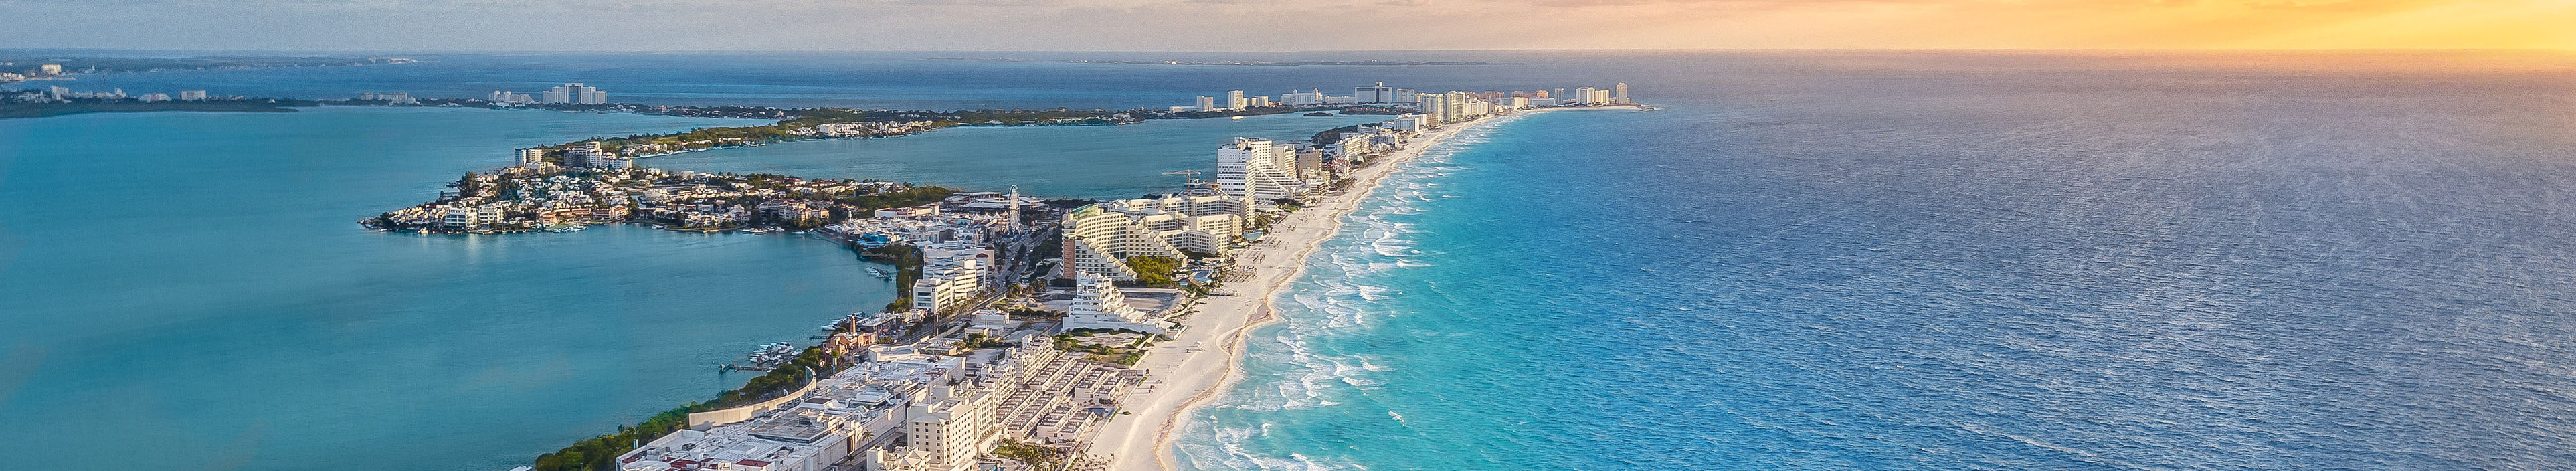 Blick von oben auf die Küste Cancuns, Mexiko.